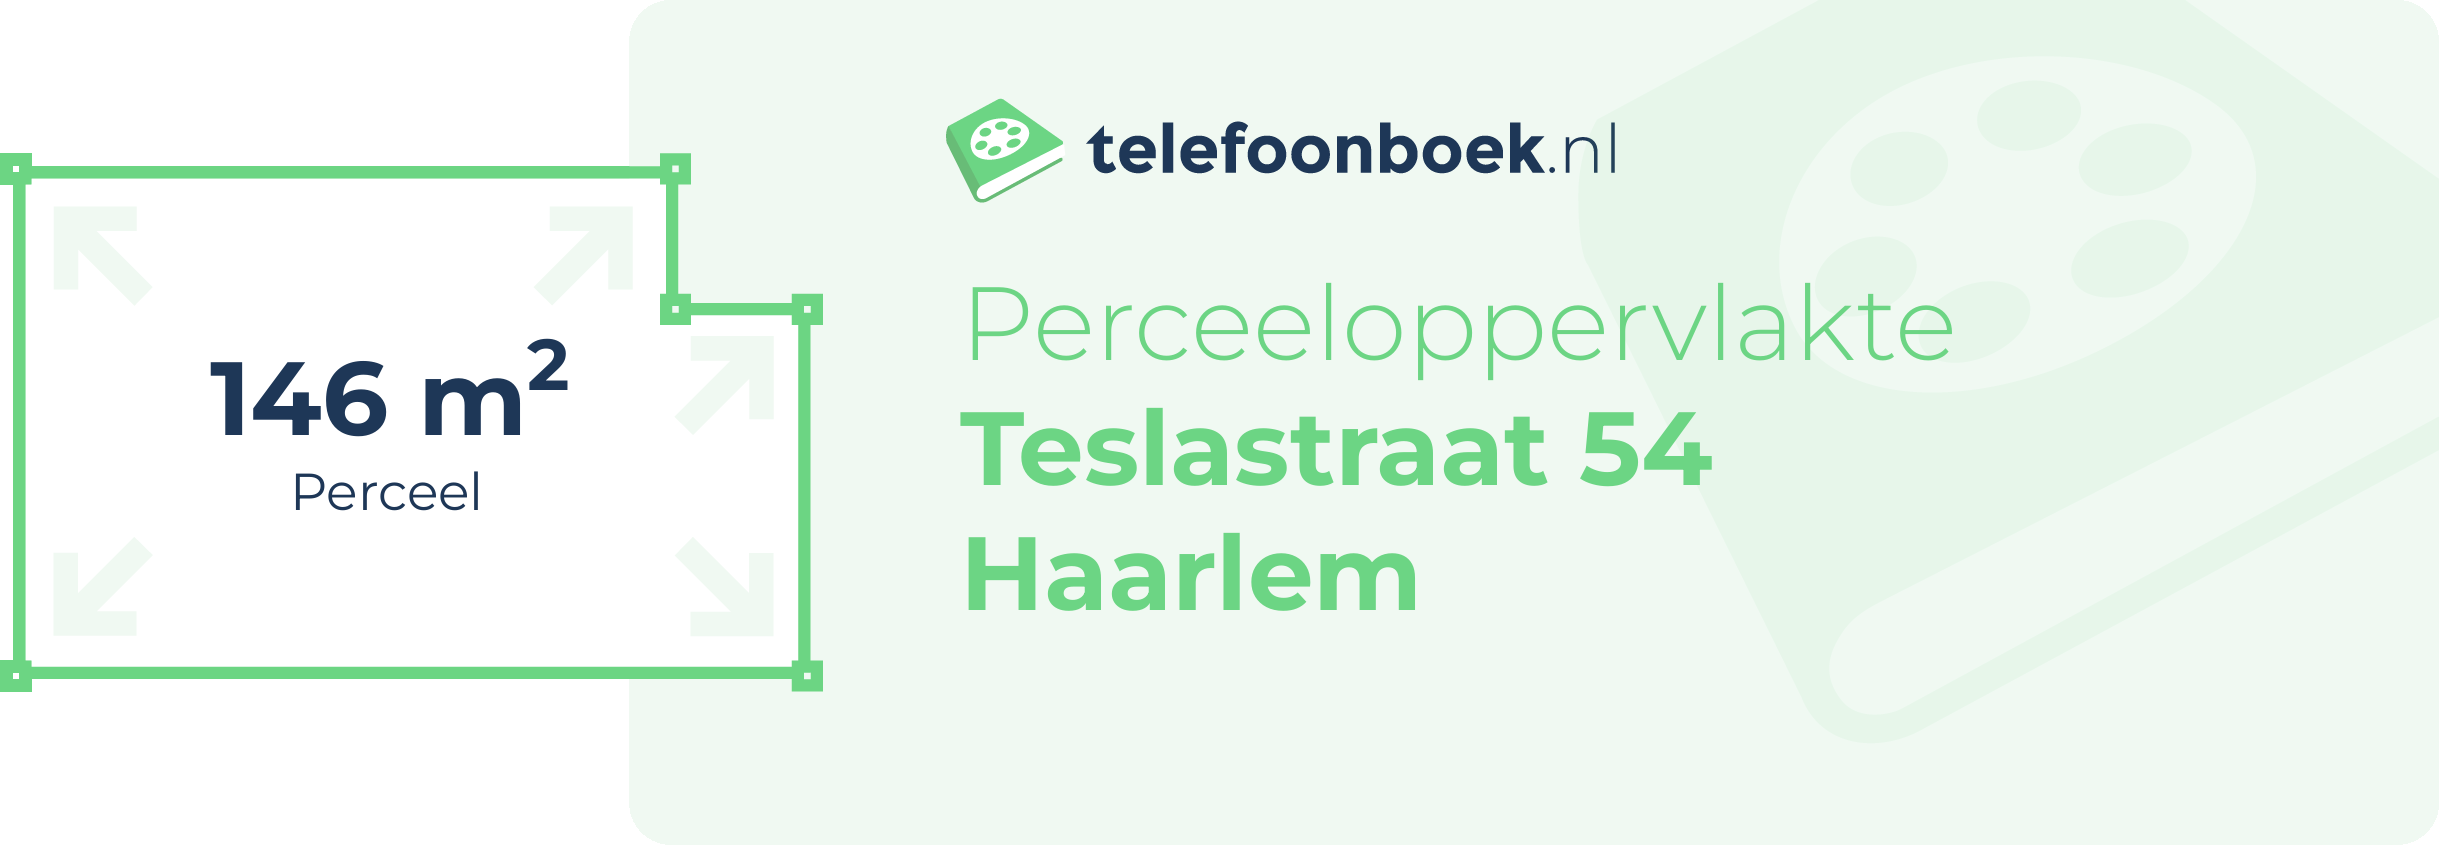 Perceeloppervlakte Teslastraat 54 Haarlem